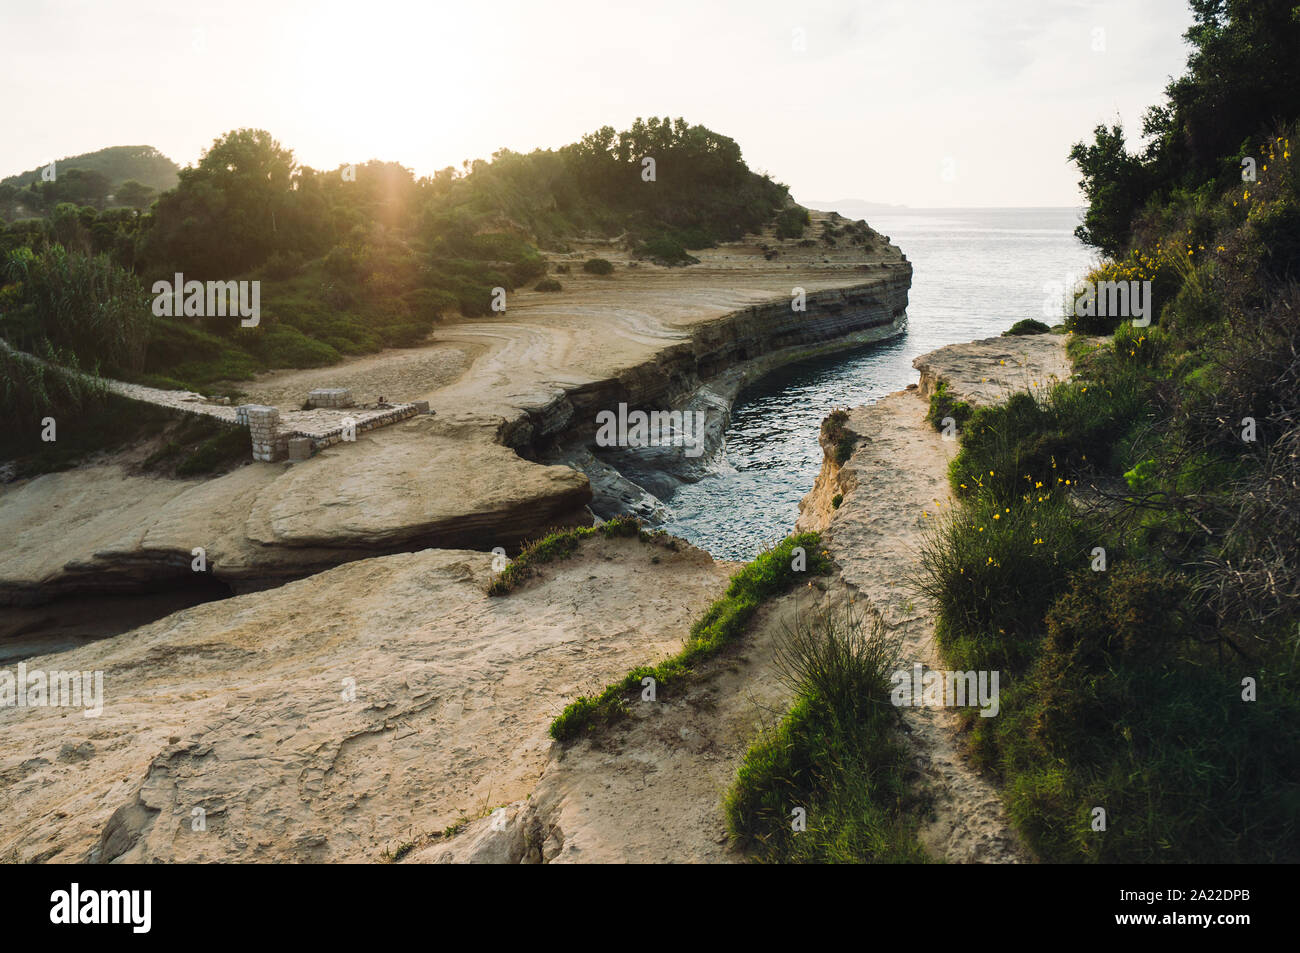 Cliff am Strand in Sidari, Stadt auf der griechischen Insel Korfu Stockfoto